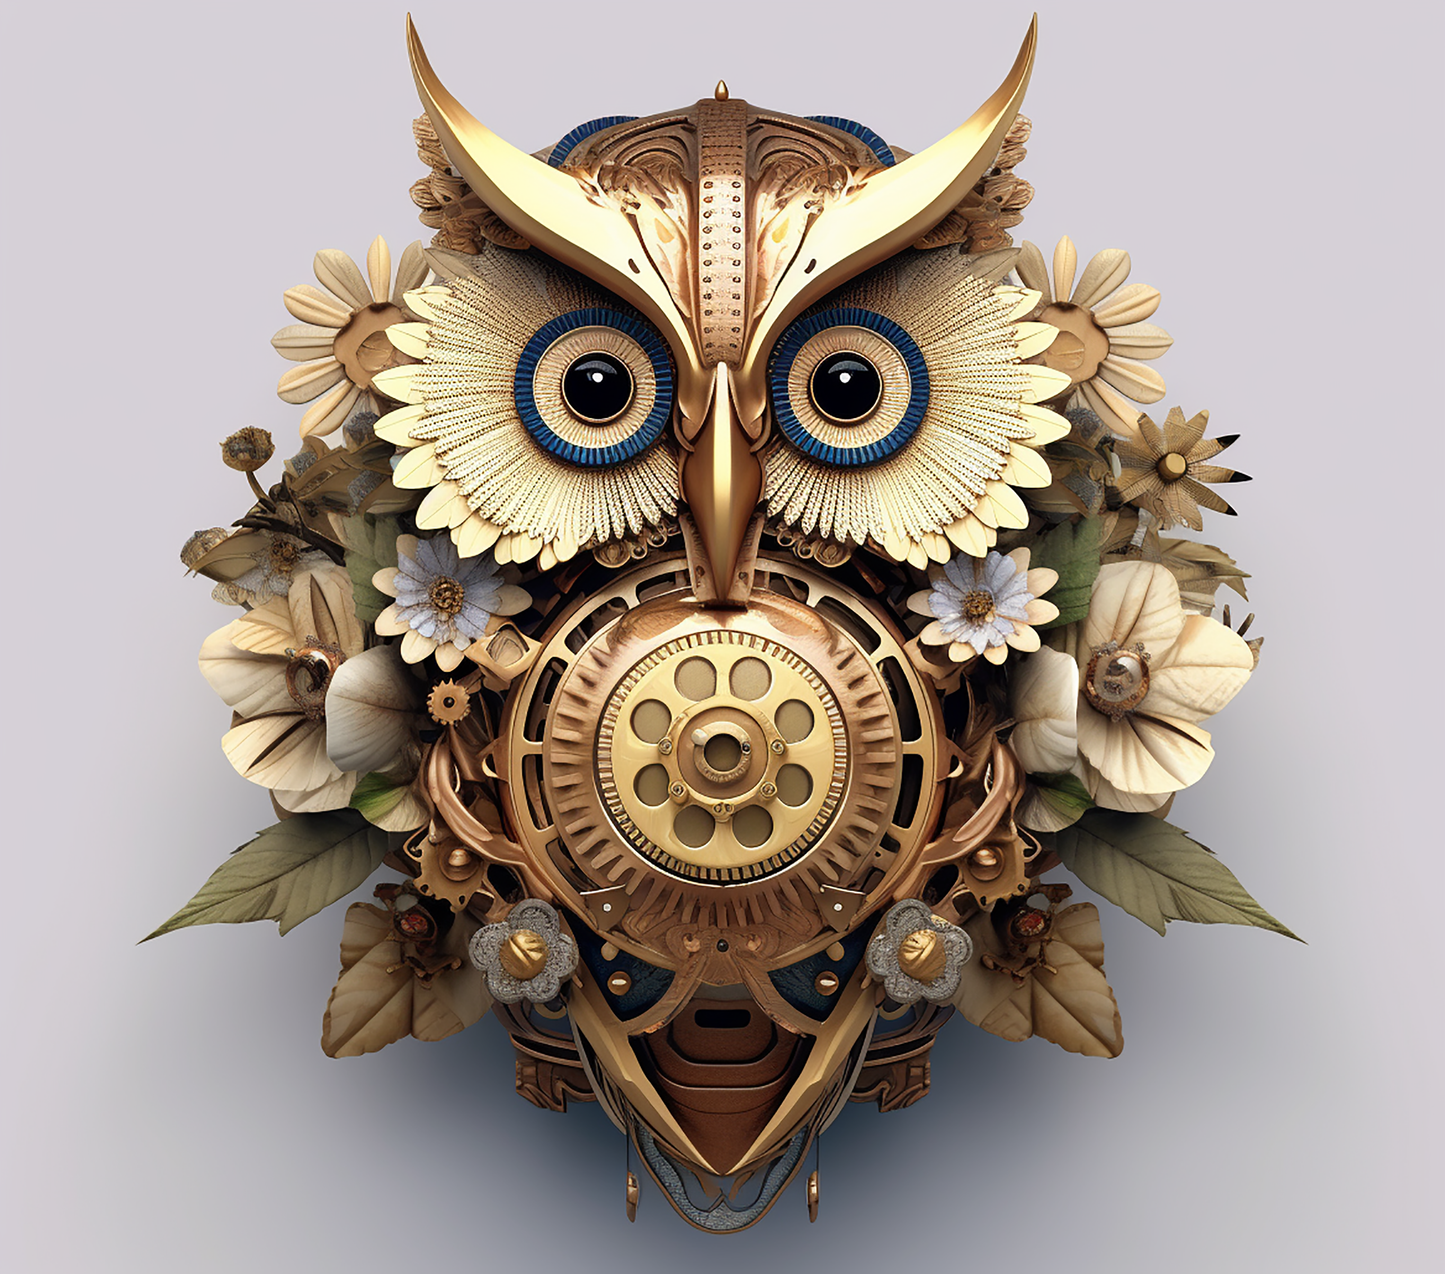 3D GOLDEN OWL STEAMPUNK